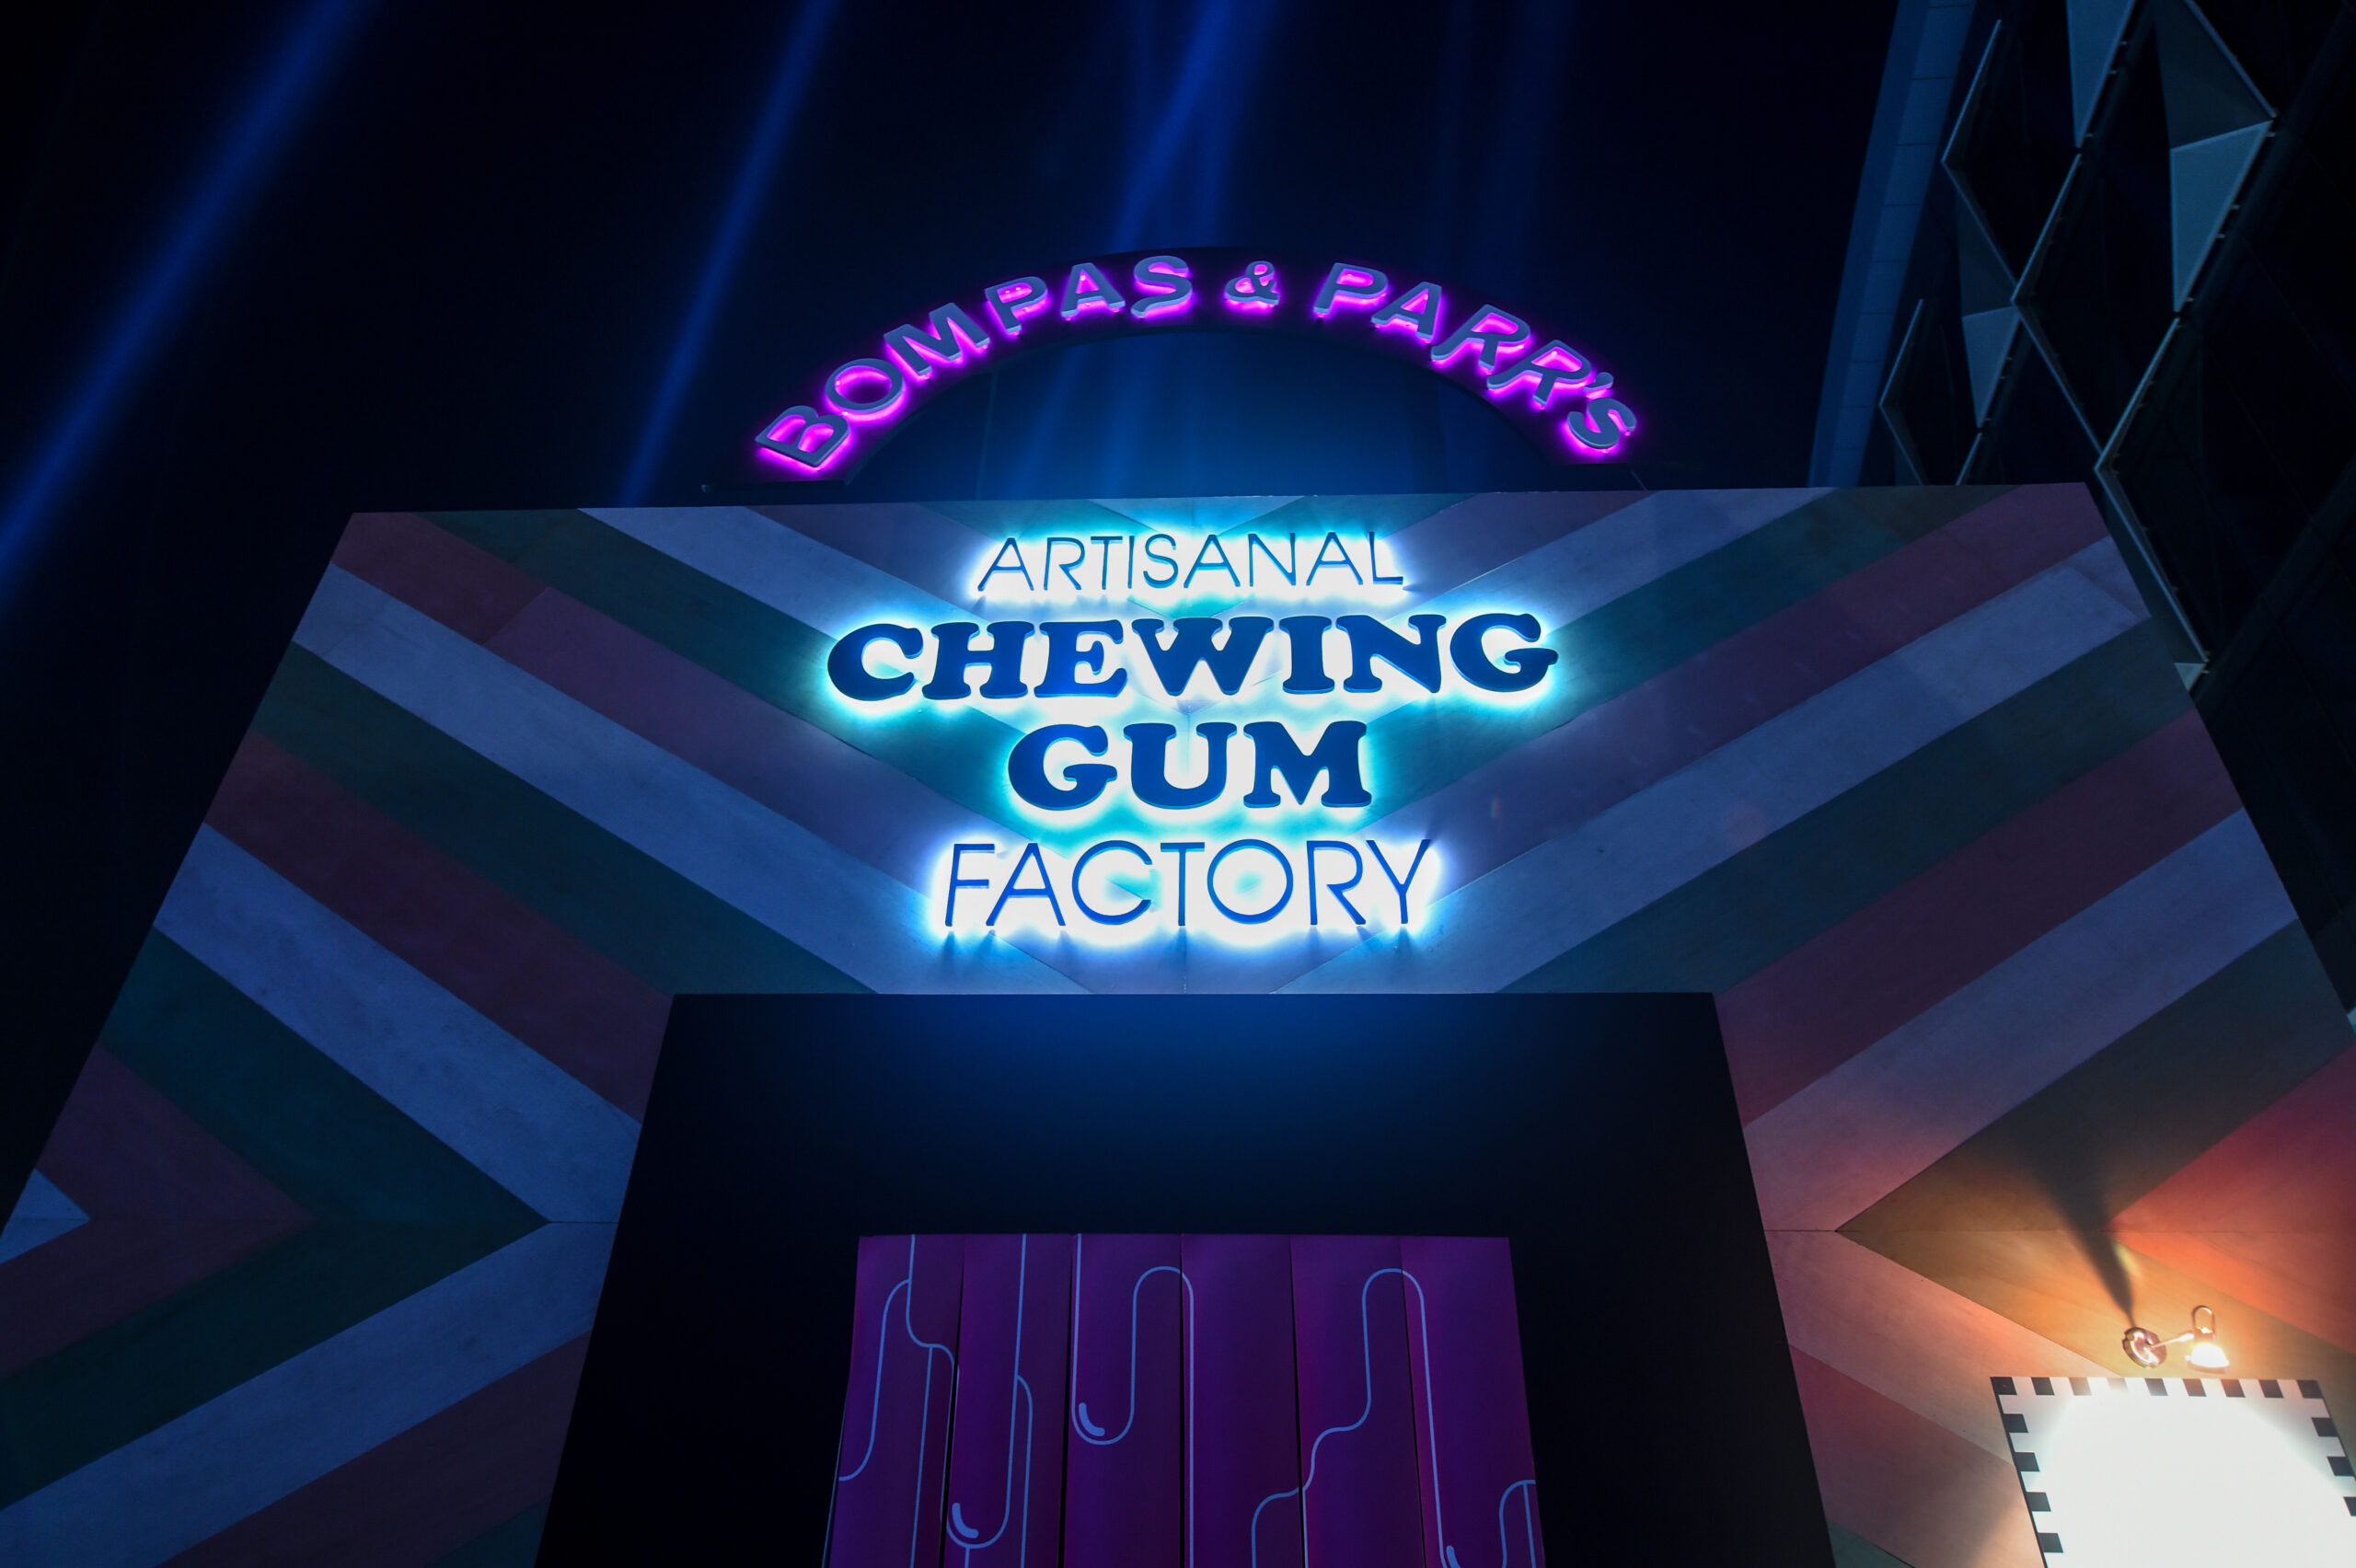 Chewing Gum Factory Dubai